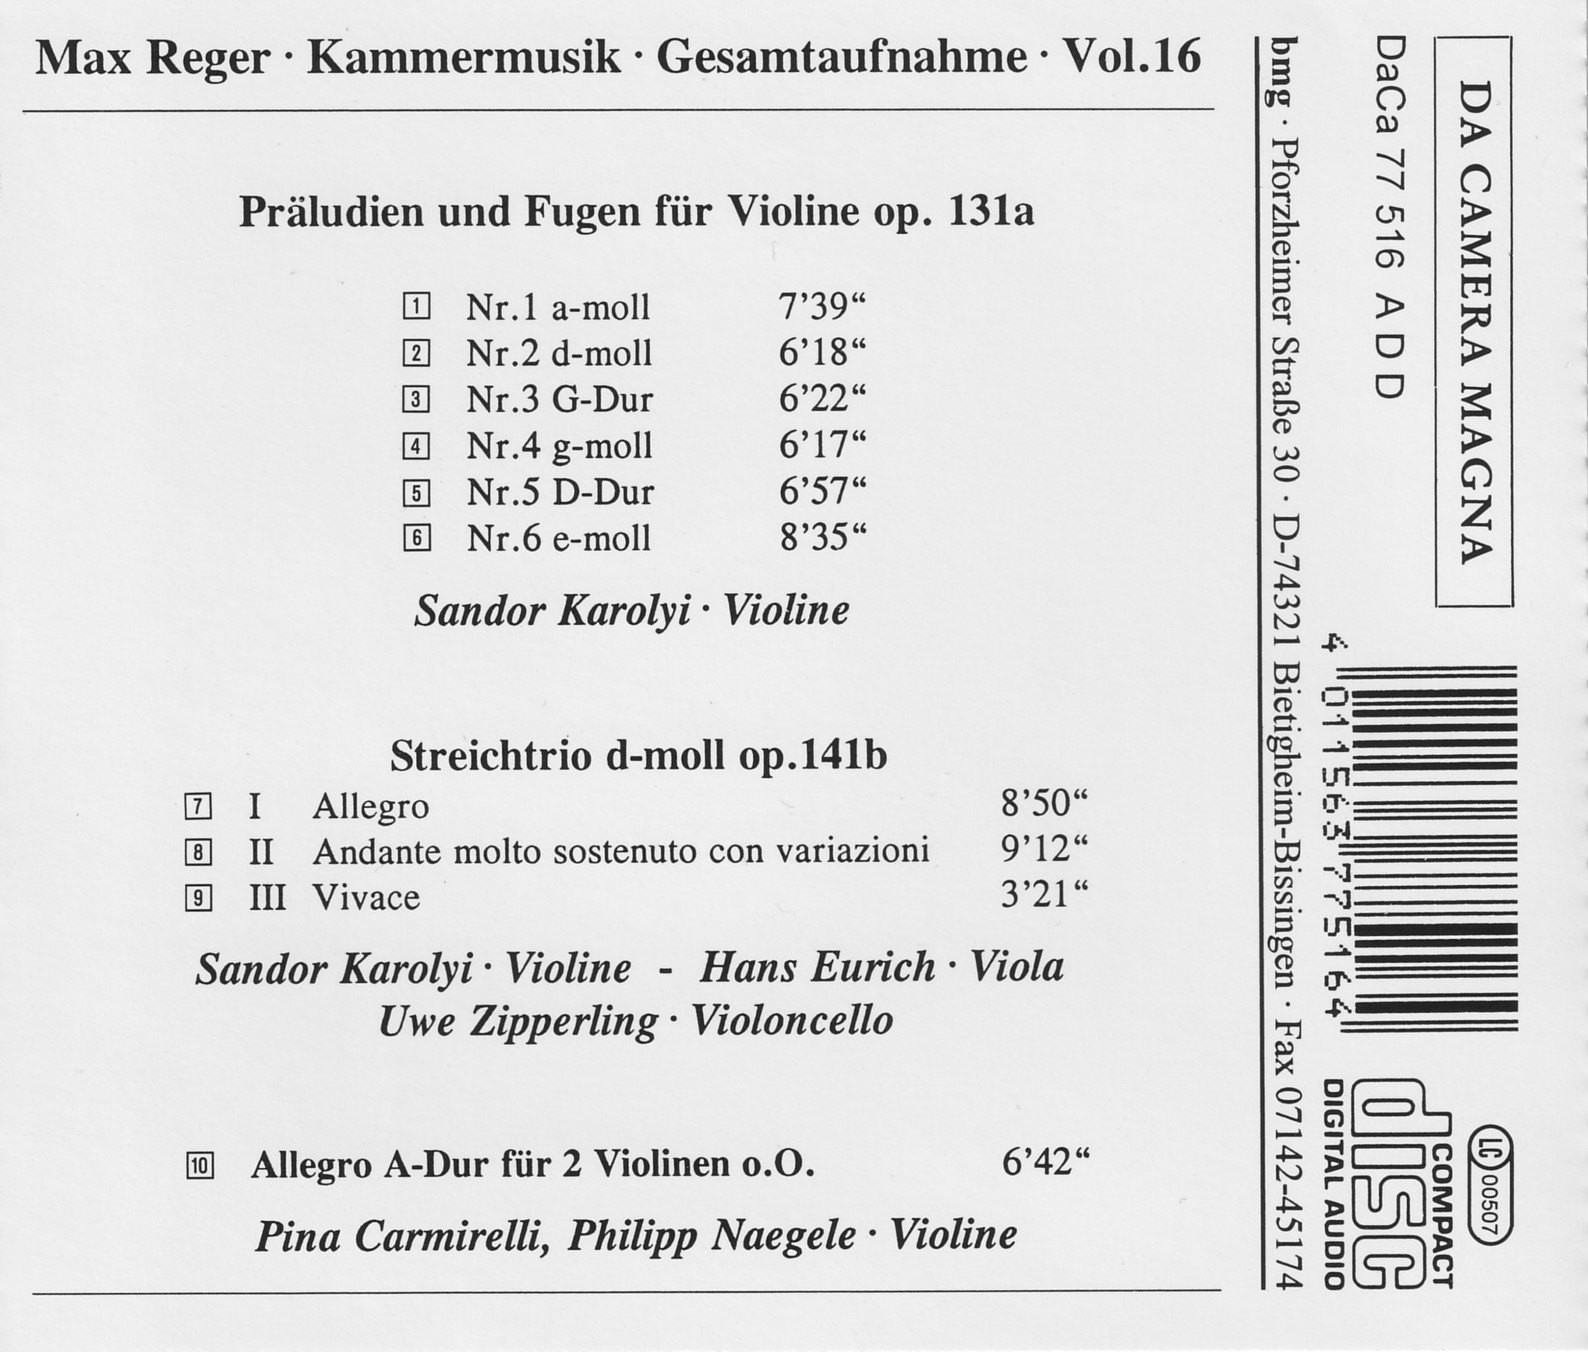 Max Reger - Kammermusik komplett Vol. 16